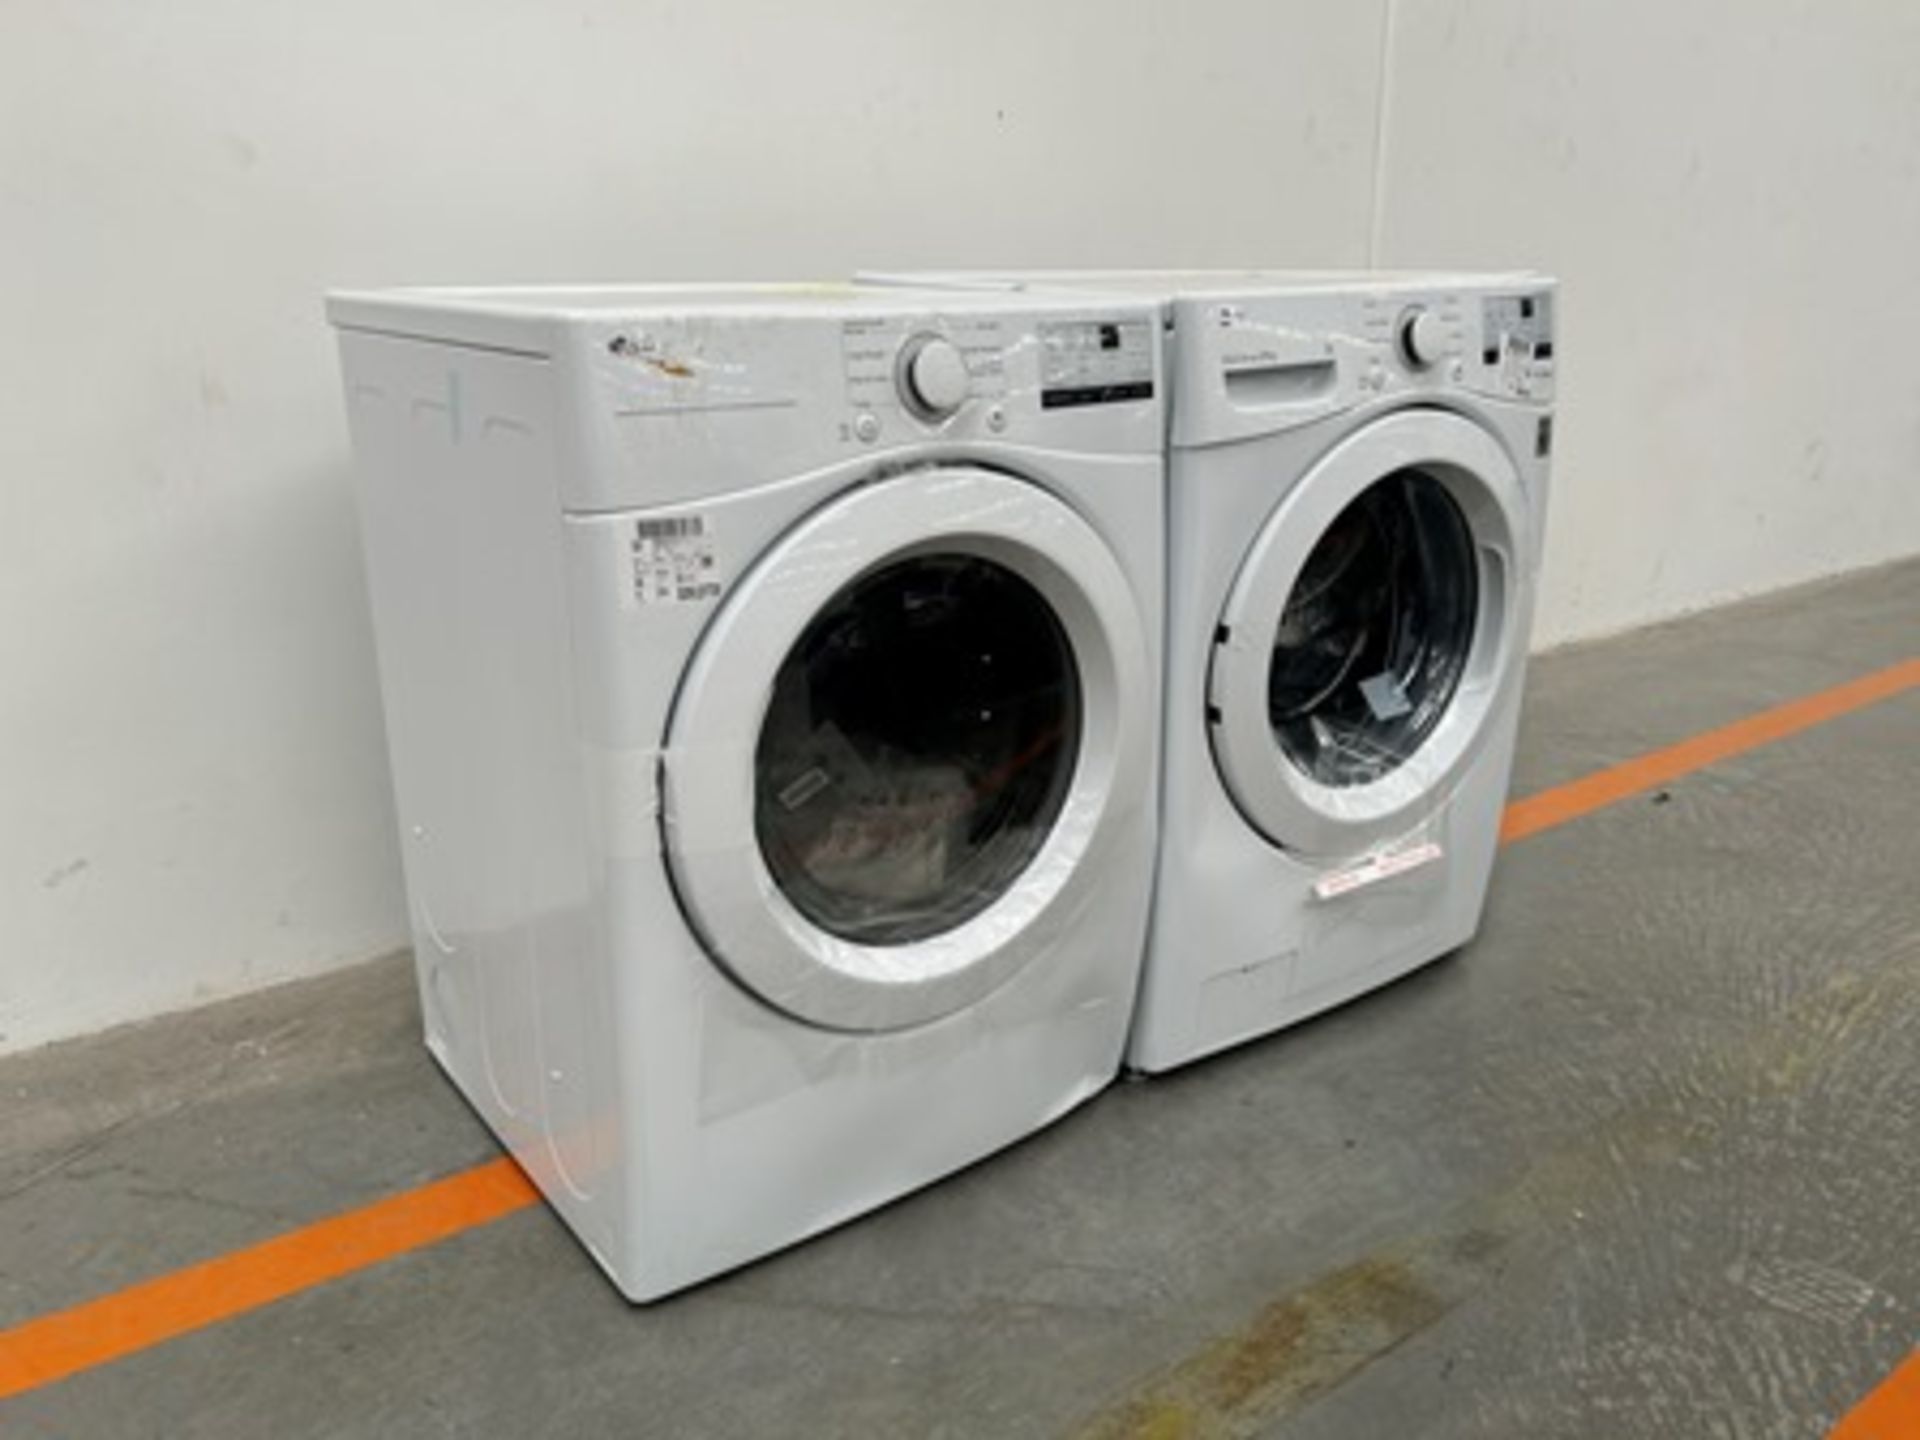 Combo lavadora y Secadora contiene: 1 Lavadora de 20 KG Marca LG, Modelo WM202V26W, Serie 0X531, Co - Image 3 of 8